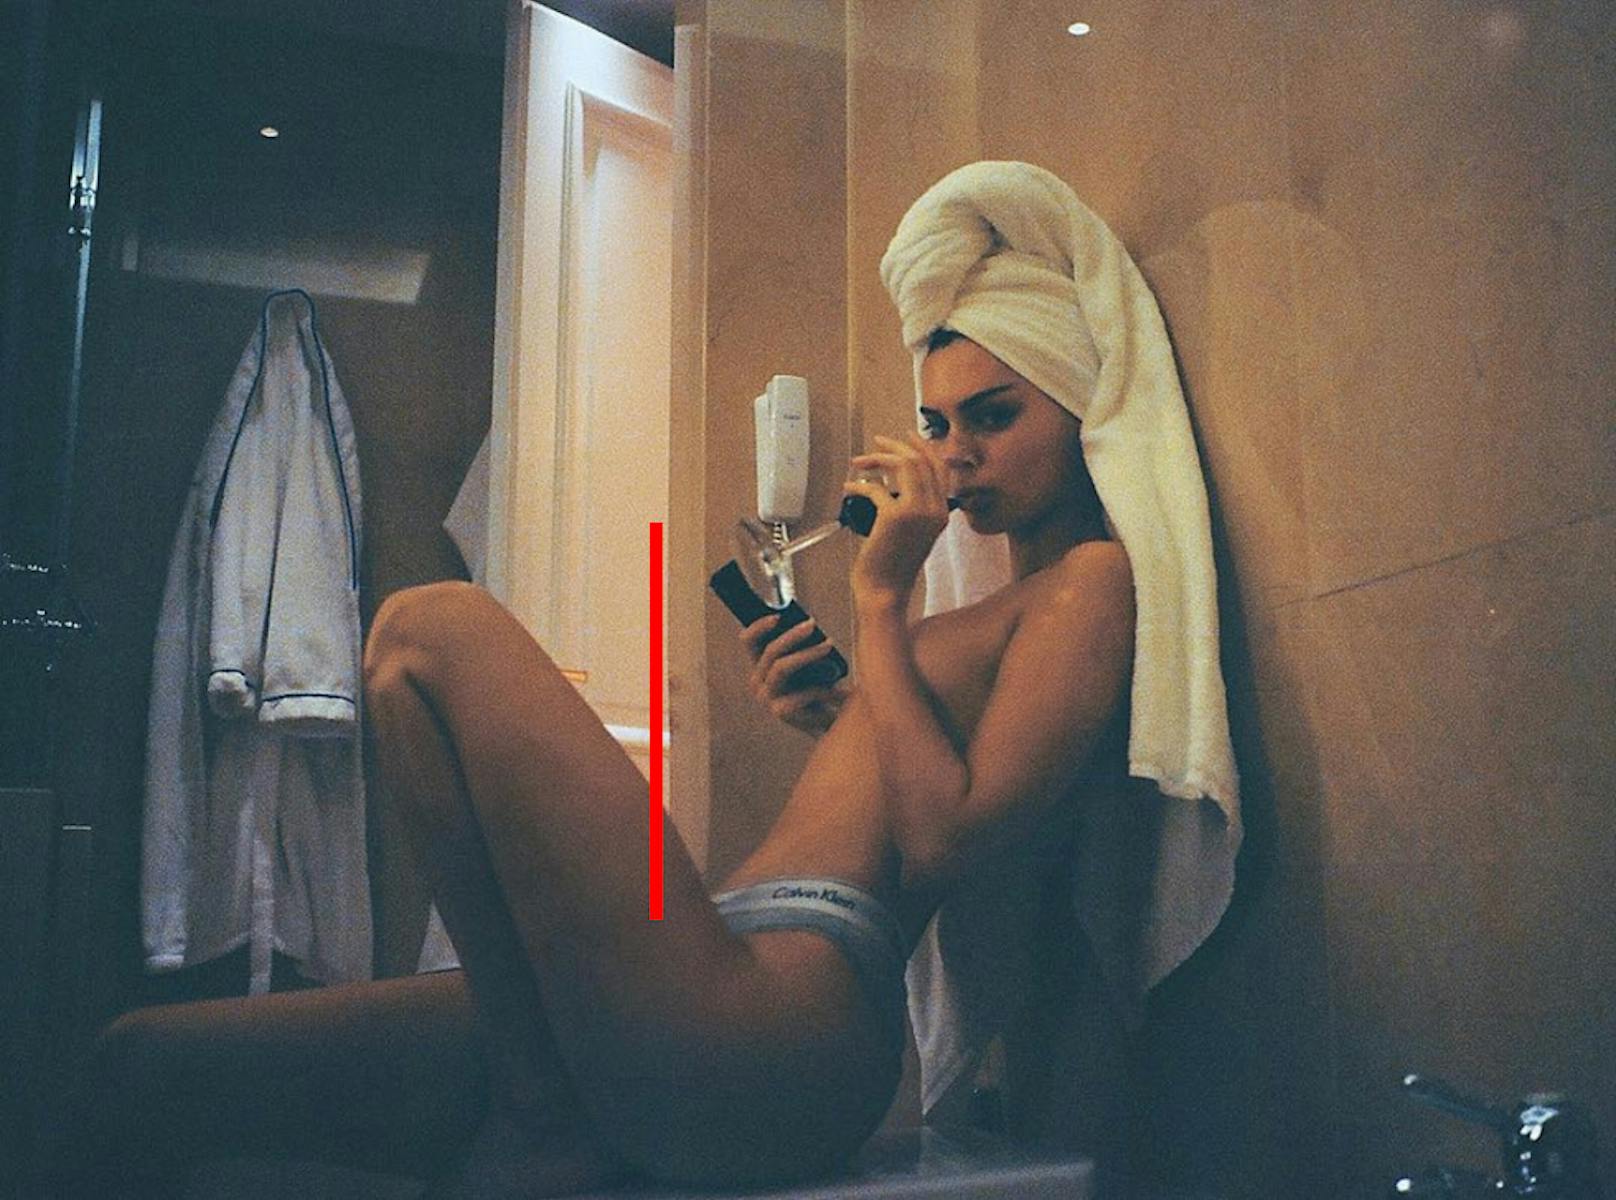 Kendall Jenner hätte sich das Unterwäsche-Foto besser schön gesoffen. Dann würde die verräterische Tür nicht zeigen, dass selbst Supermodels nicht mit ihrem Körper zufrieden sind